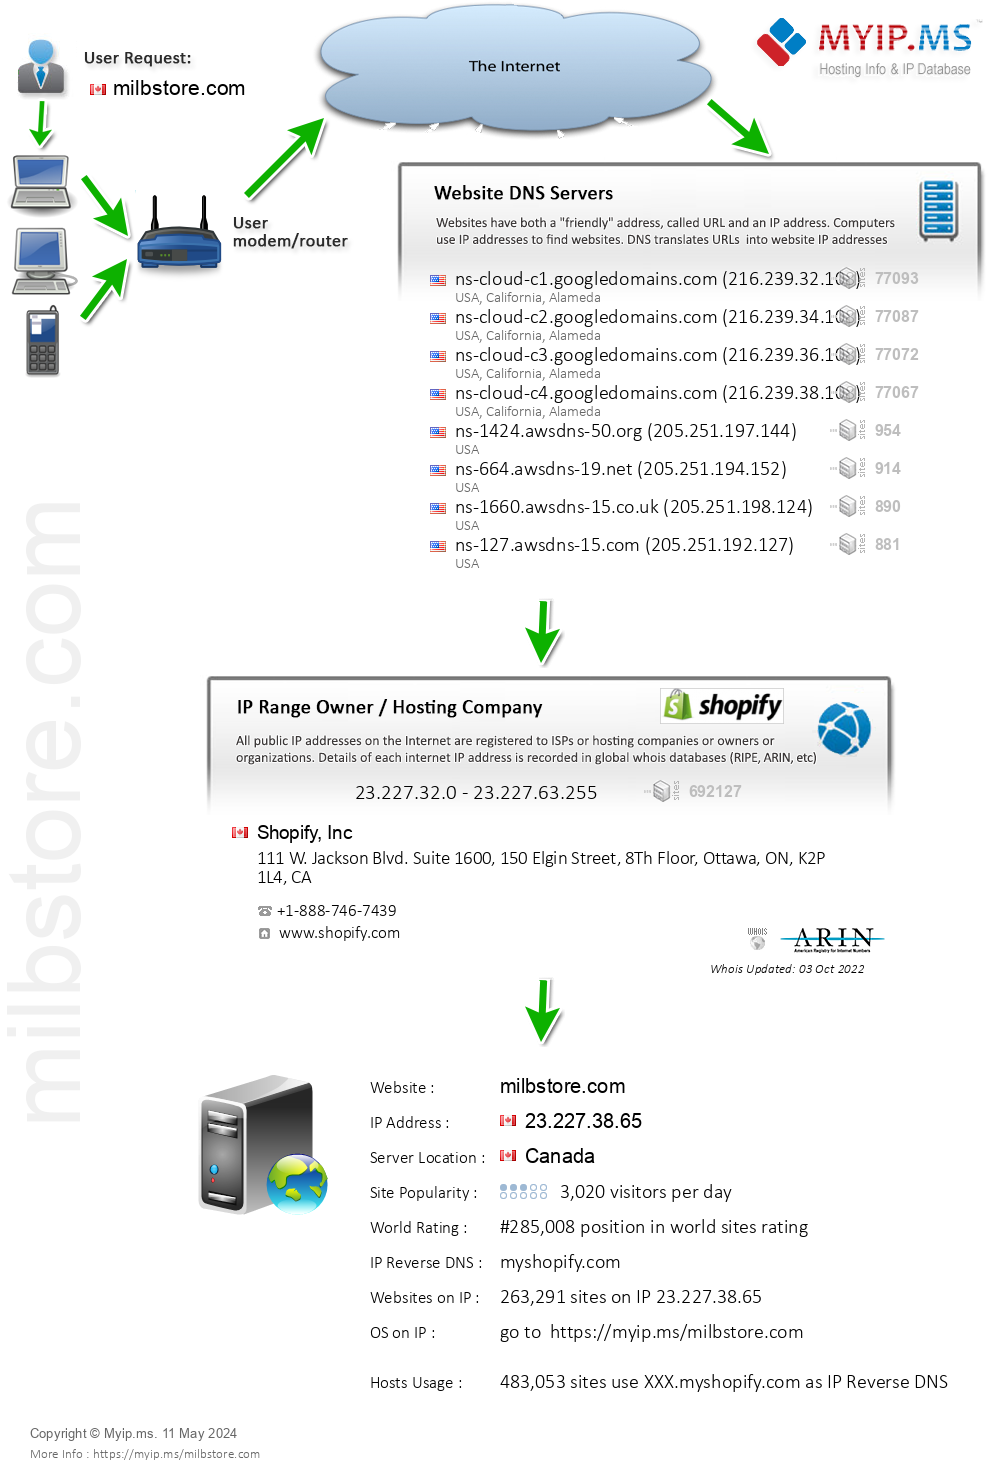 Milbstore.com - Website Hosting Visual IP Diagram